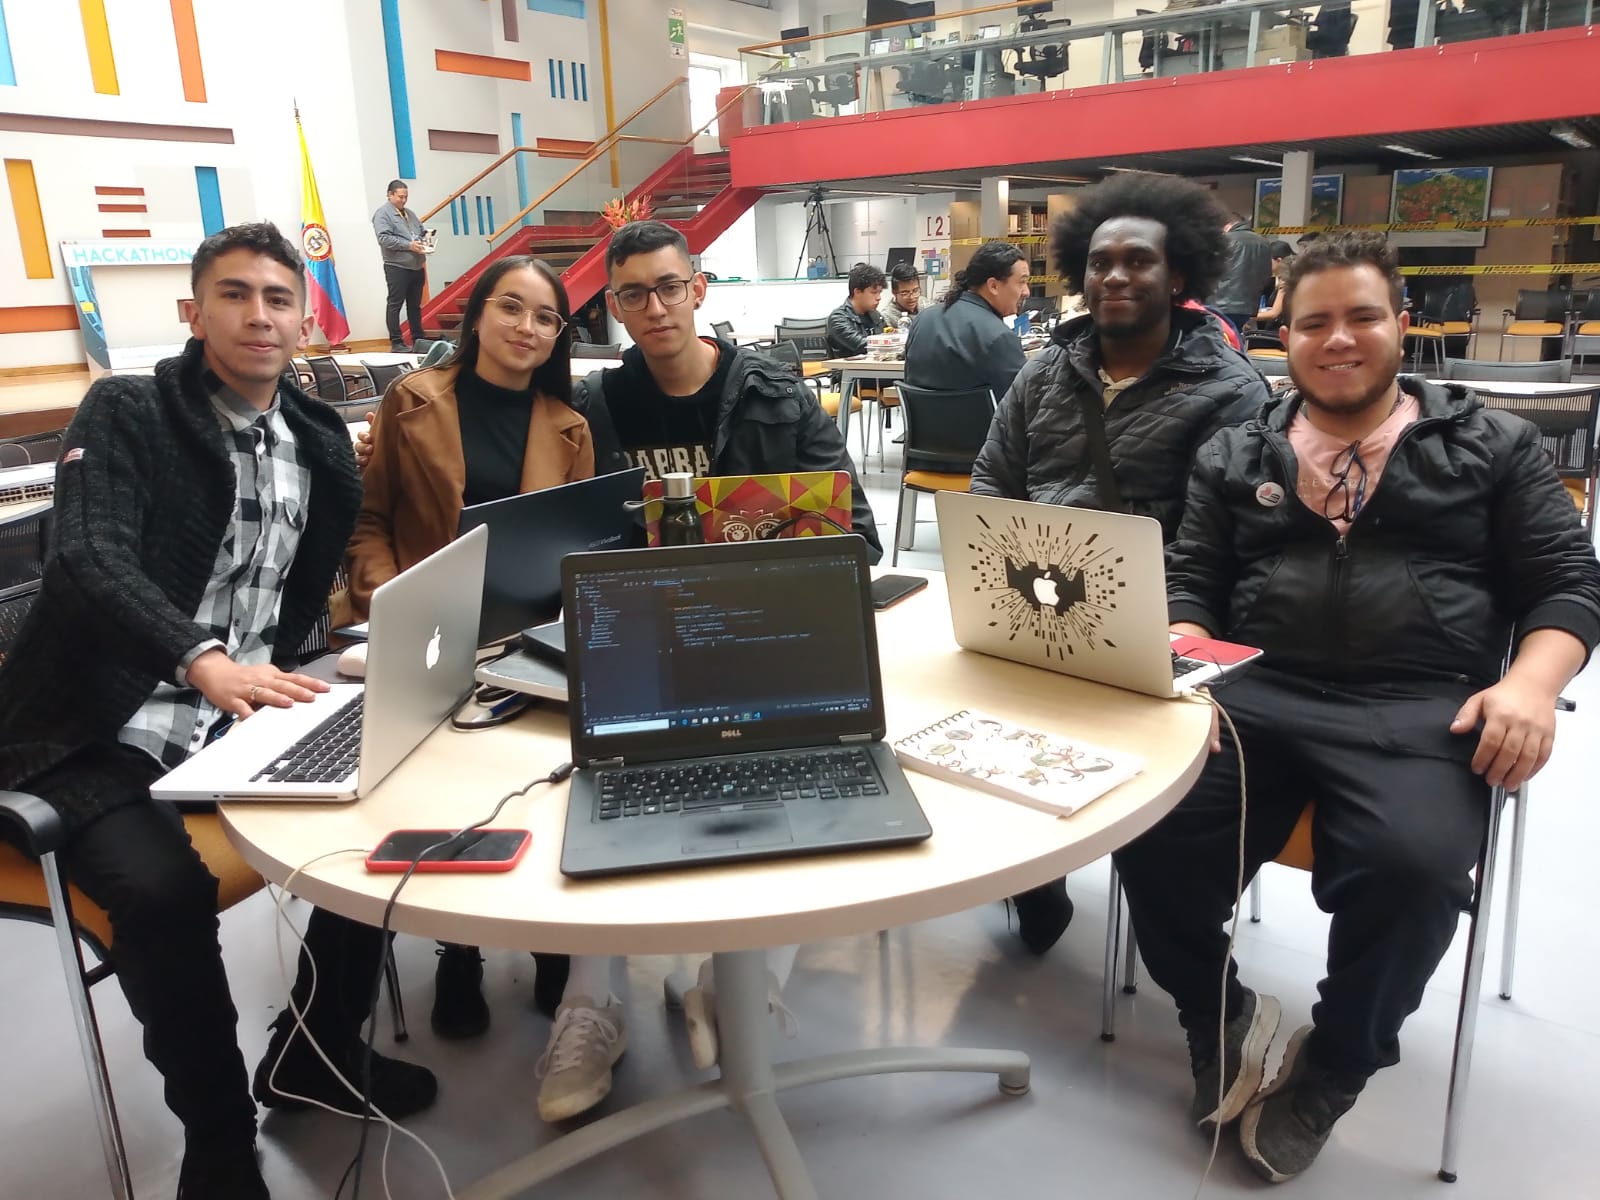 Imagen noticia SIAM, el grupo ganador de la ‘Hackathon Reto Bogotá’ 